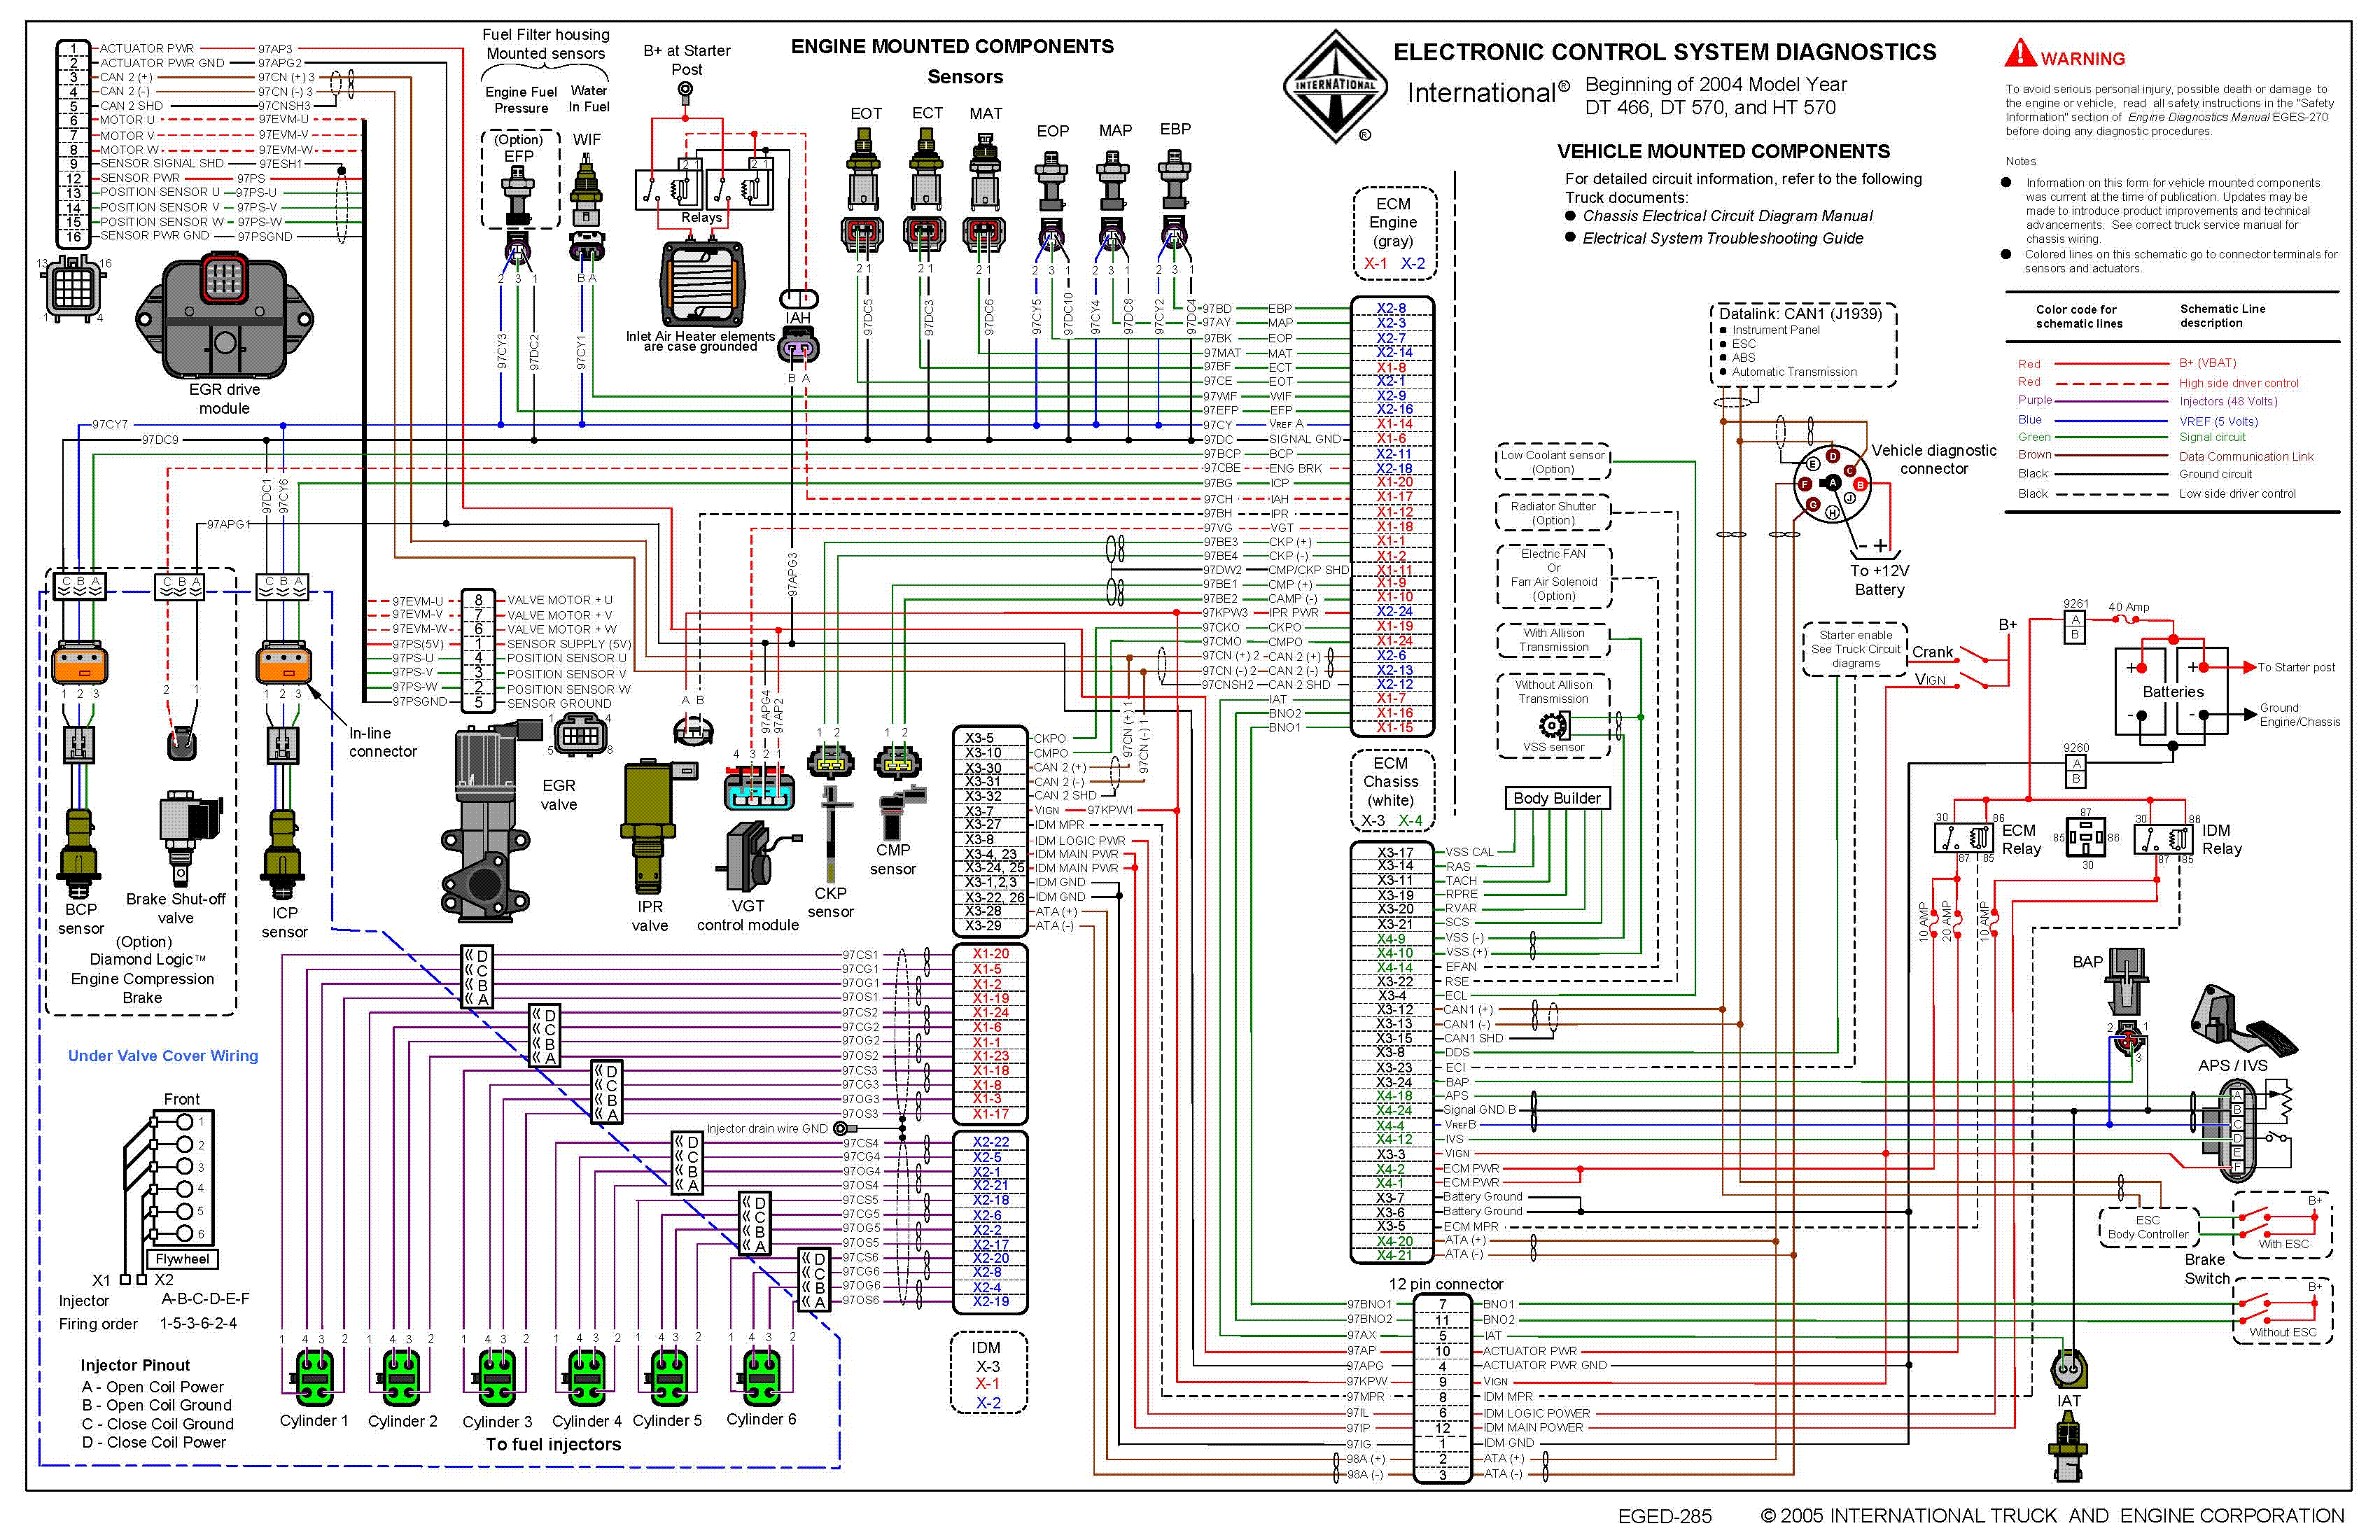 2006 International 4300 AC Wiring Diagram - image details